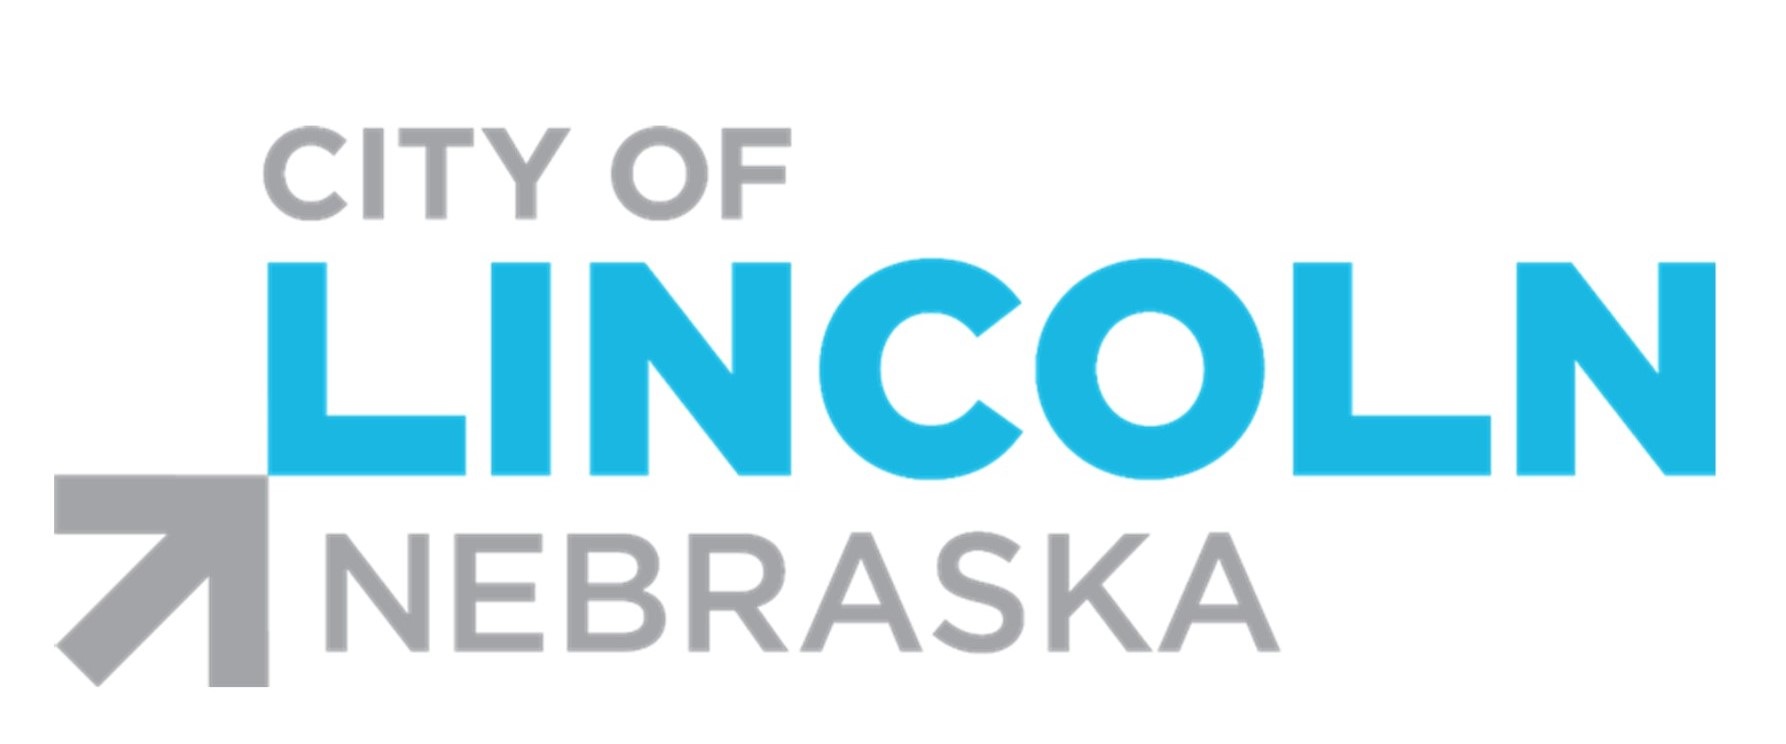 City-of-Lincoln-logo.jpg